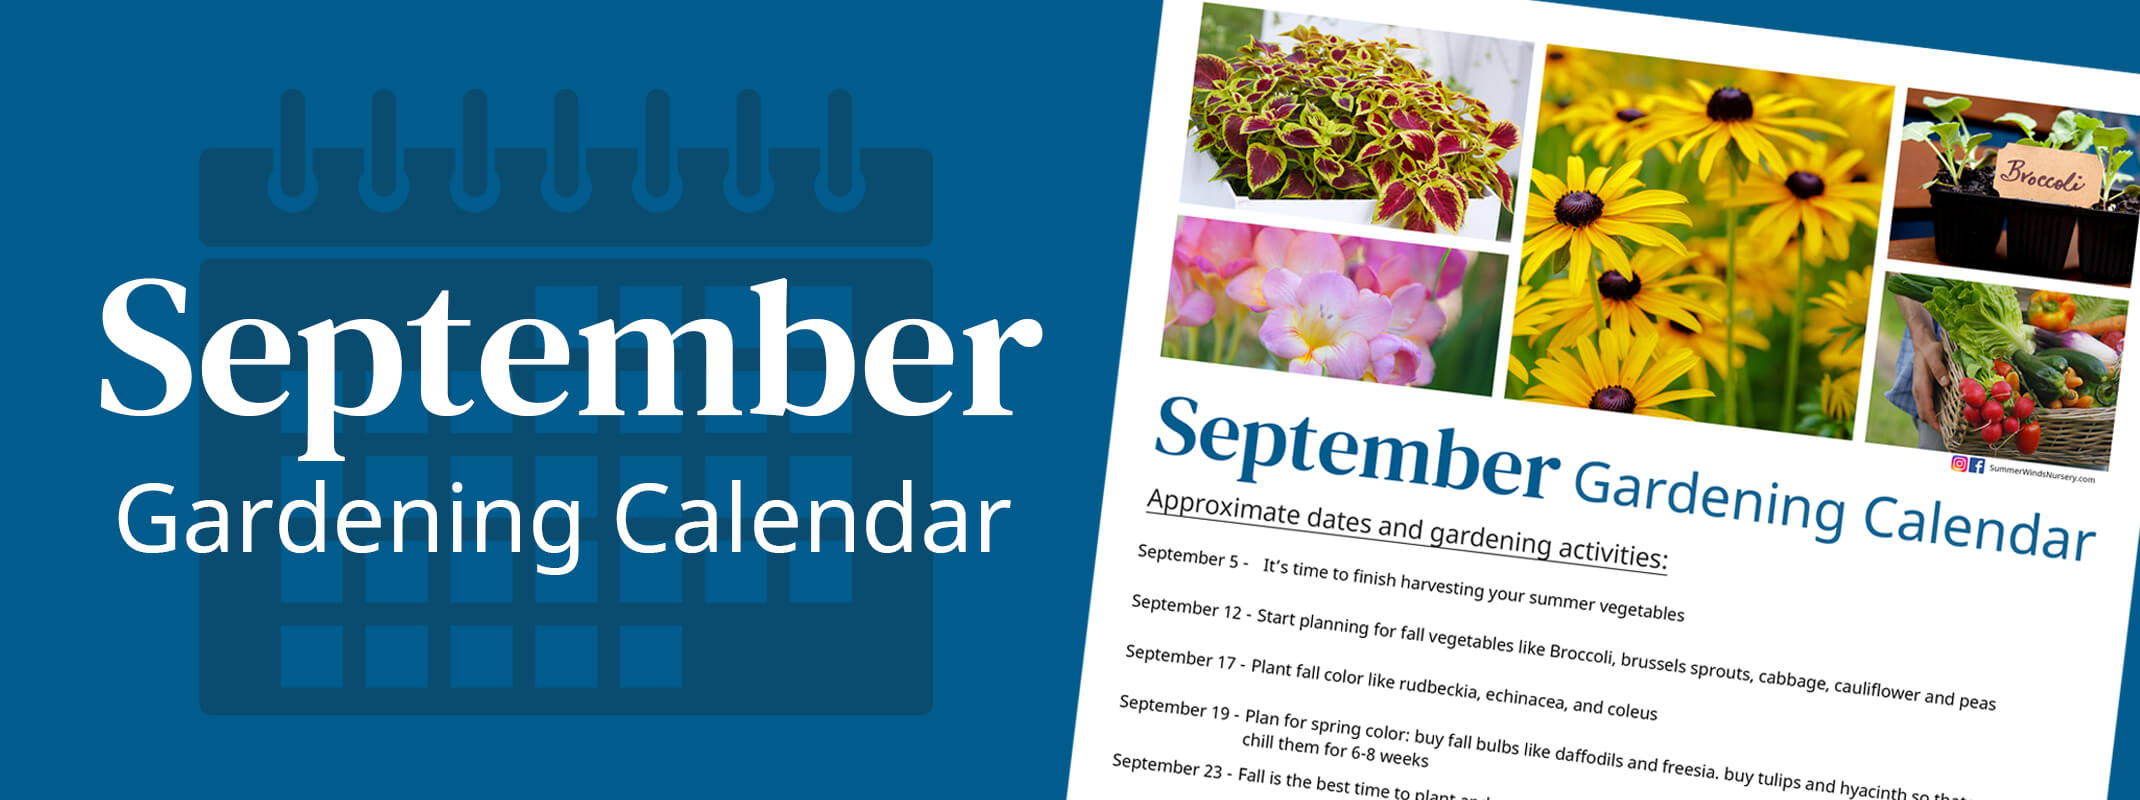 September gardening calendar banner